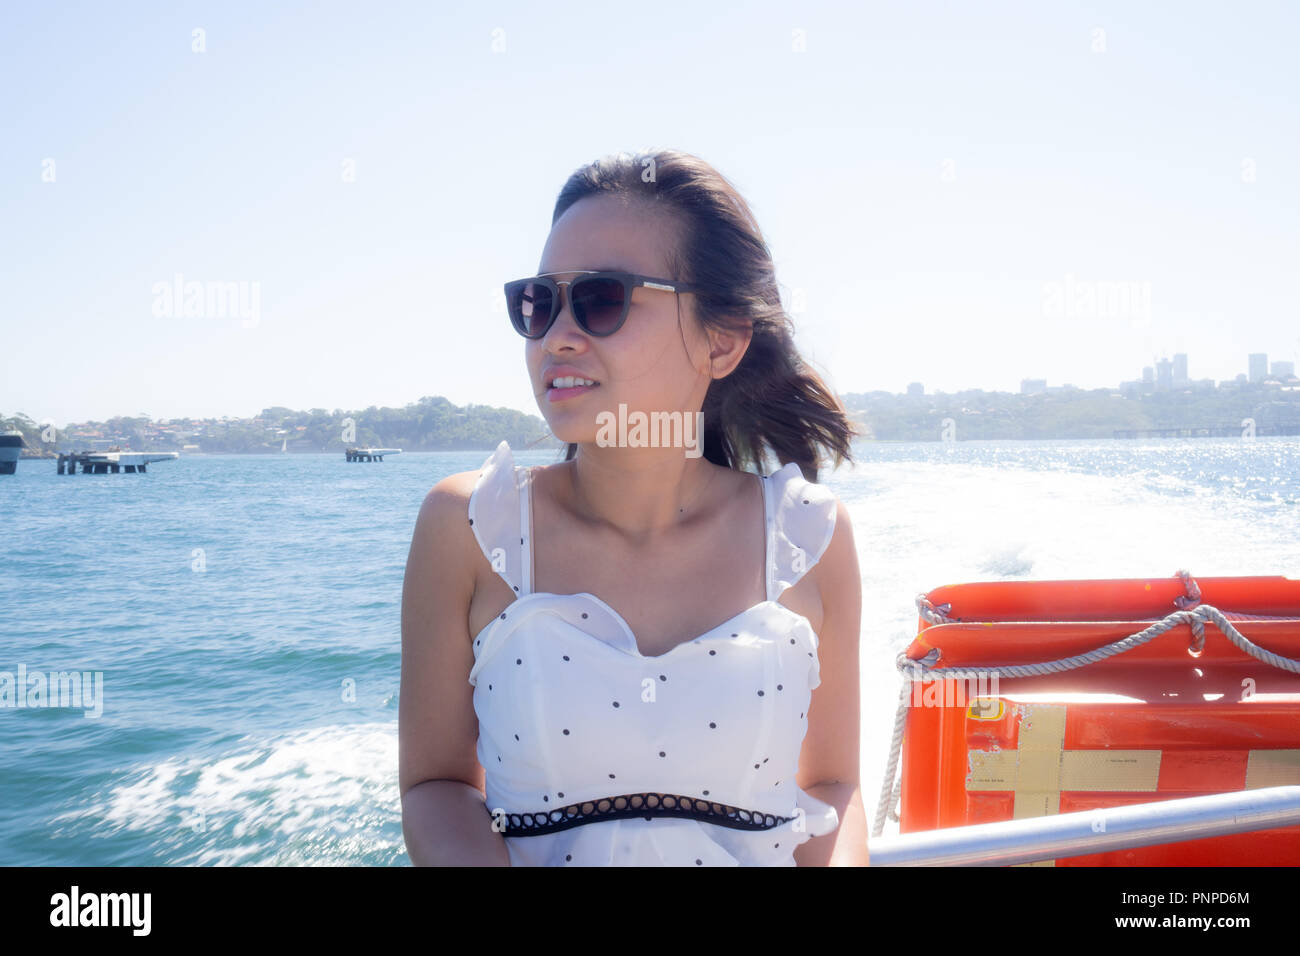 1 avril 2018 : Sydney, Australie : Jeune femme sur le ferry de Circular Quay sur un jour bleu clair Banque D'Images